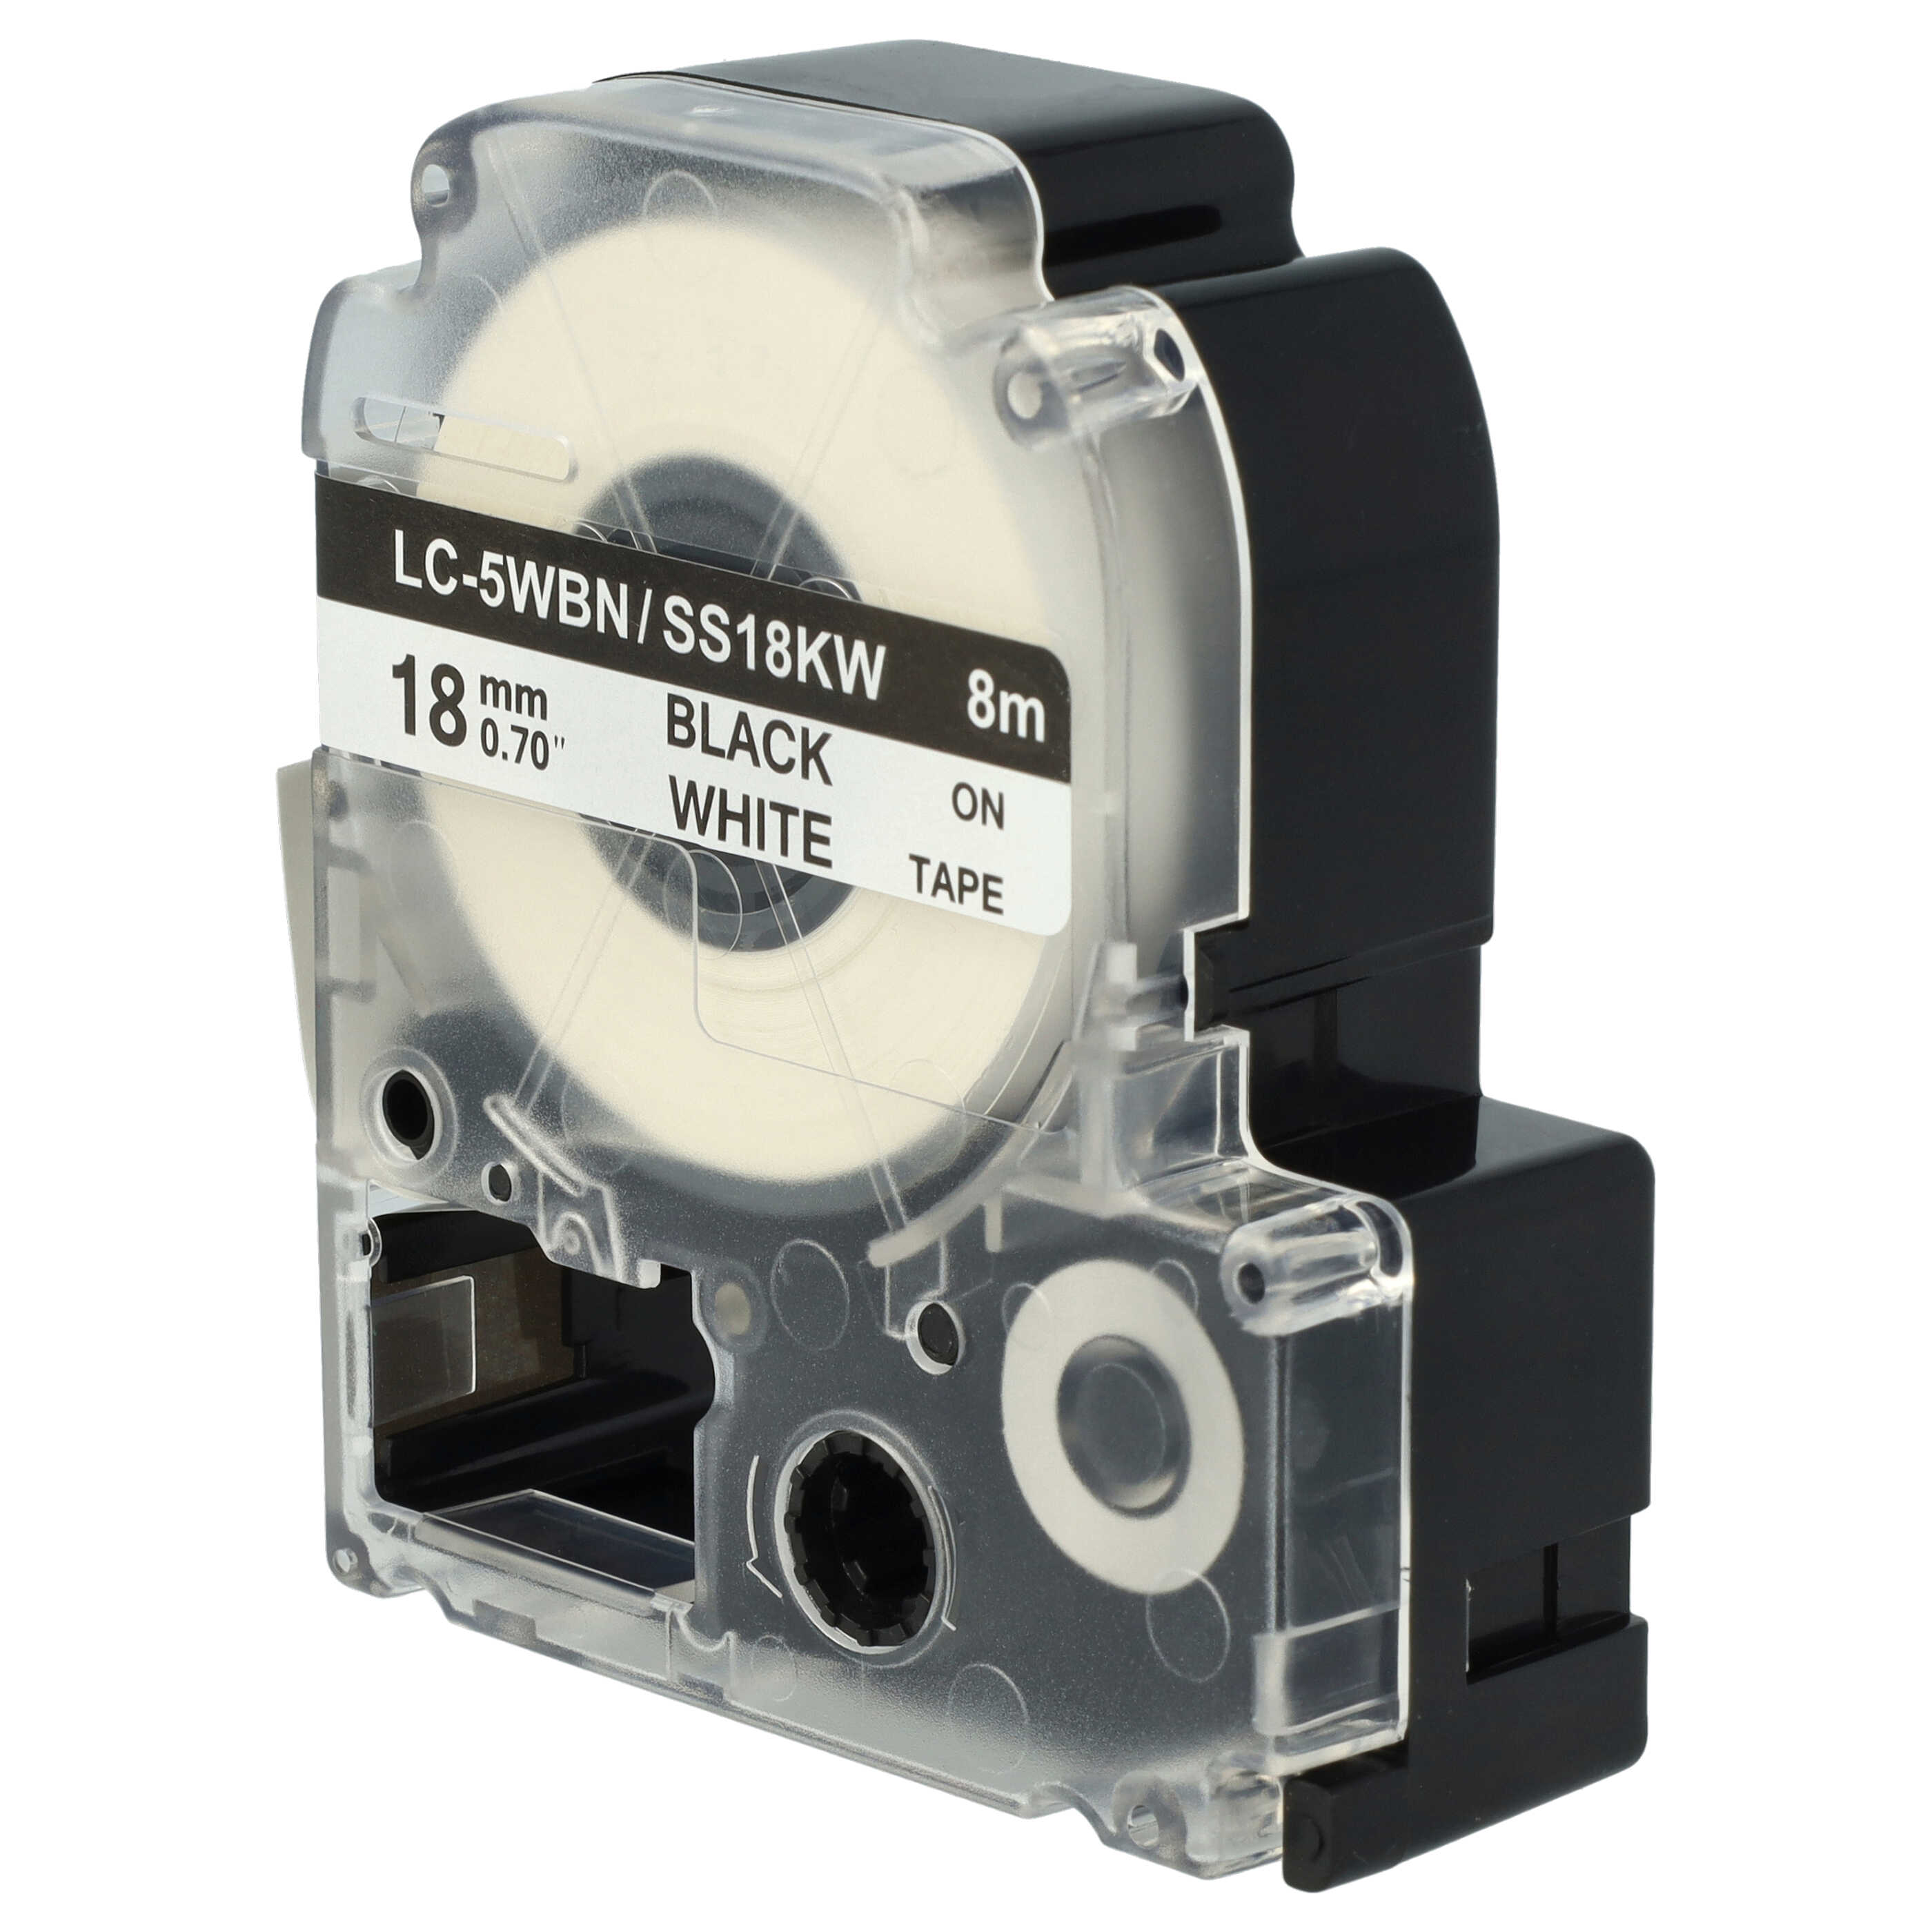 3x Cassetta nastro sostituisce Epson SS18KW, LC-5WBN per etichettatrice Epson 18mm nero su bianco